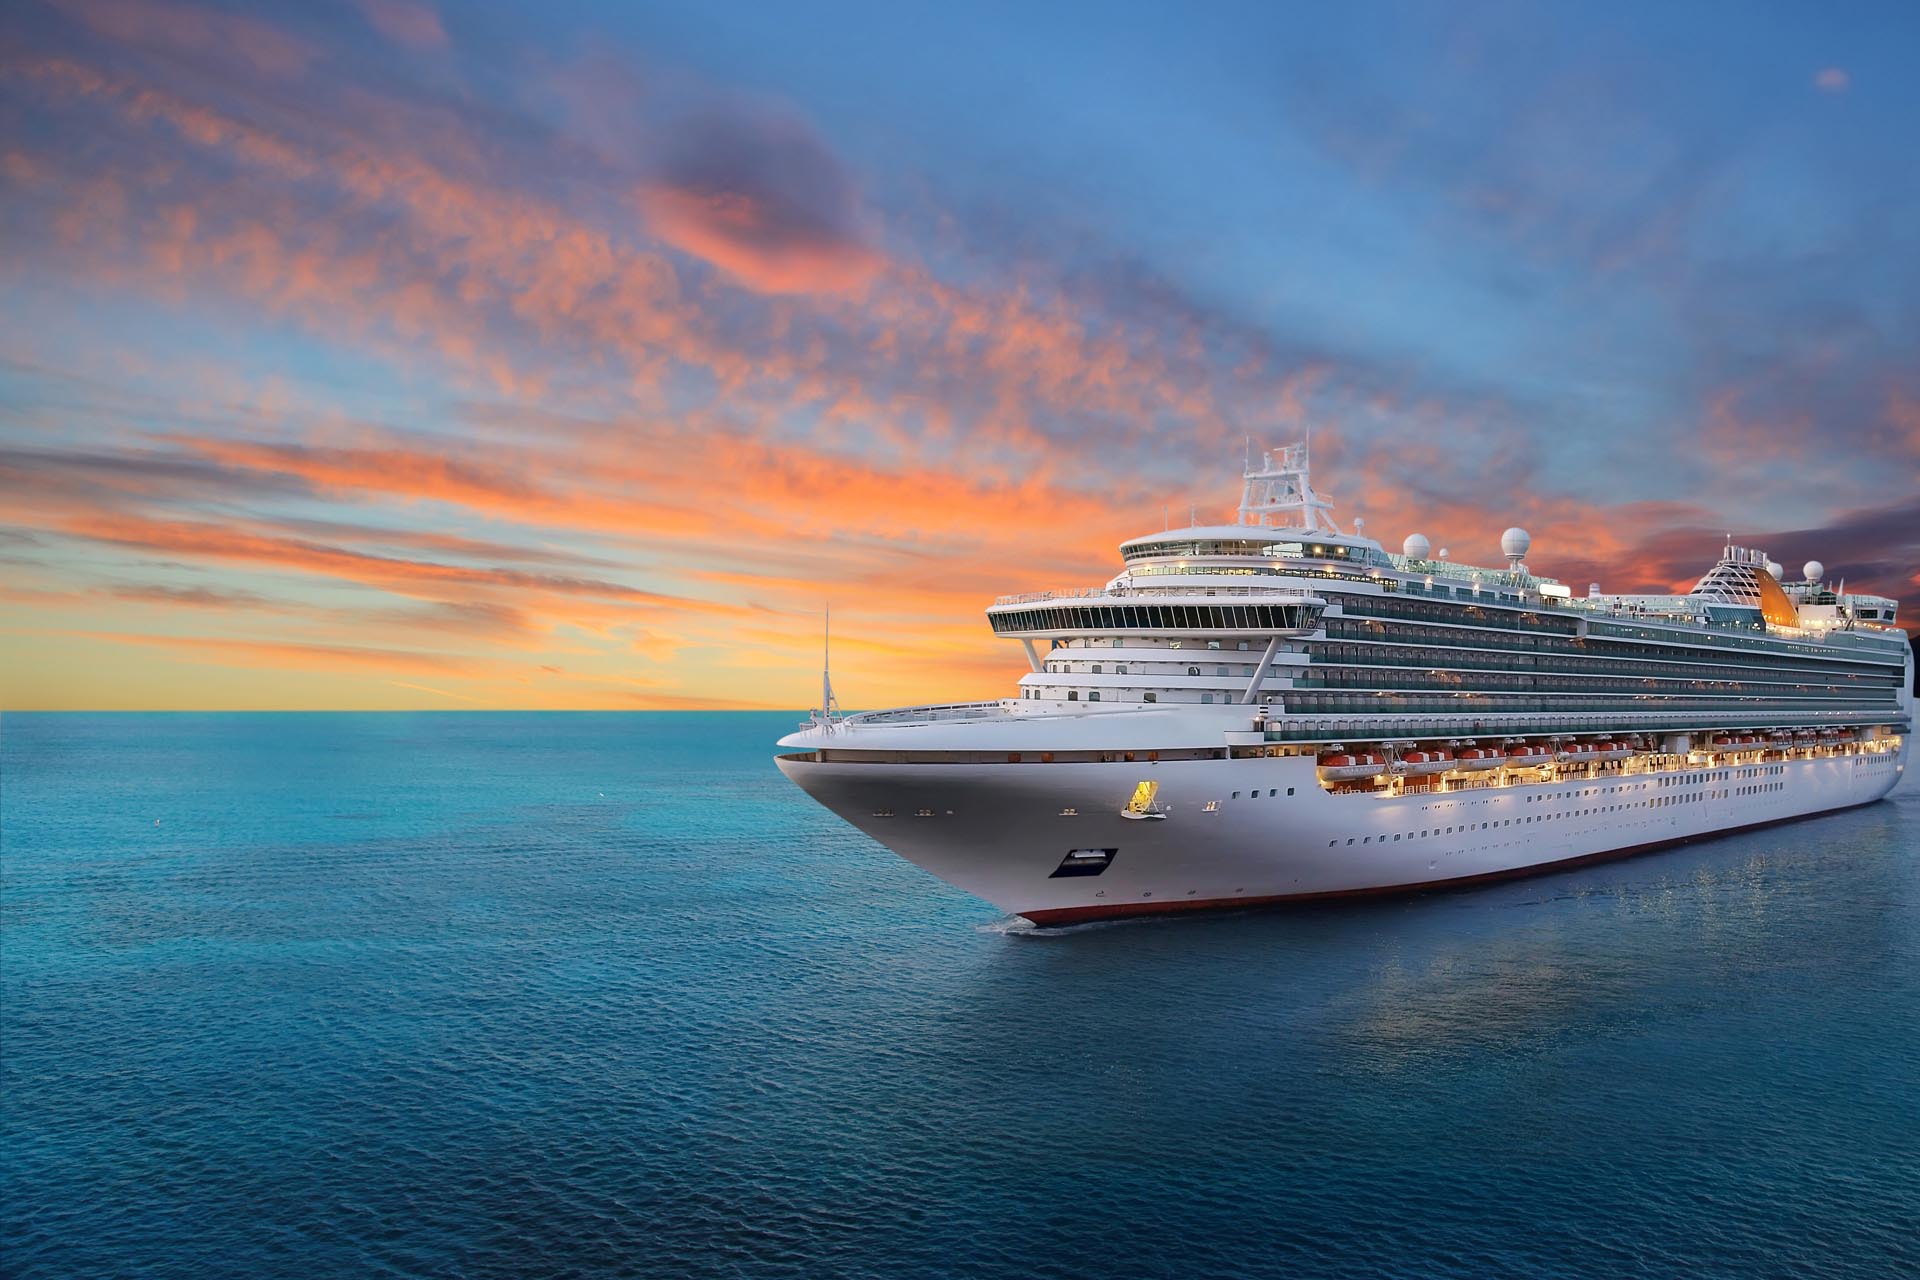 luxury-cruise-ship-sailing-to-port-on-sunrise-1